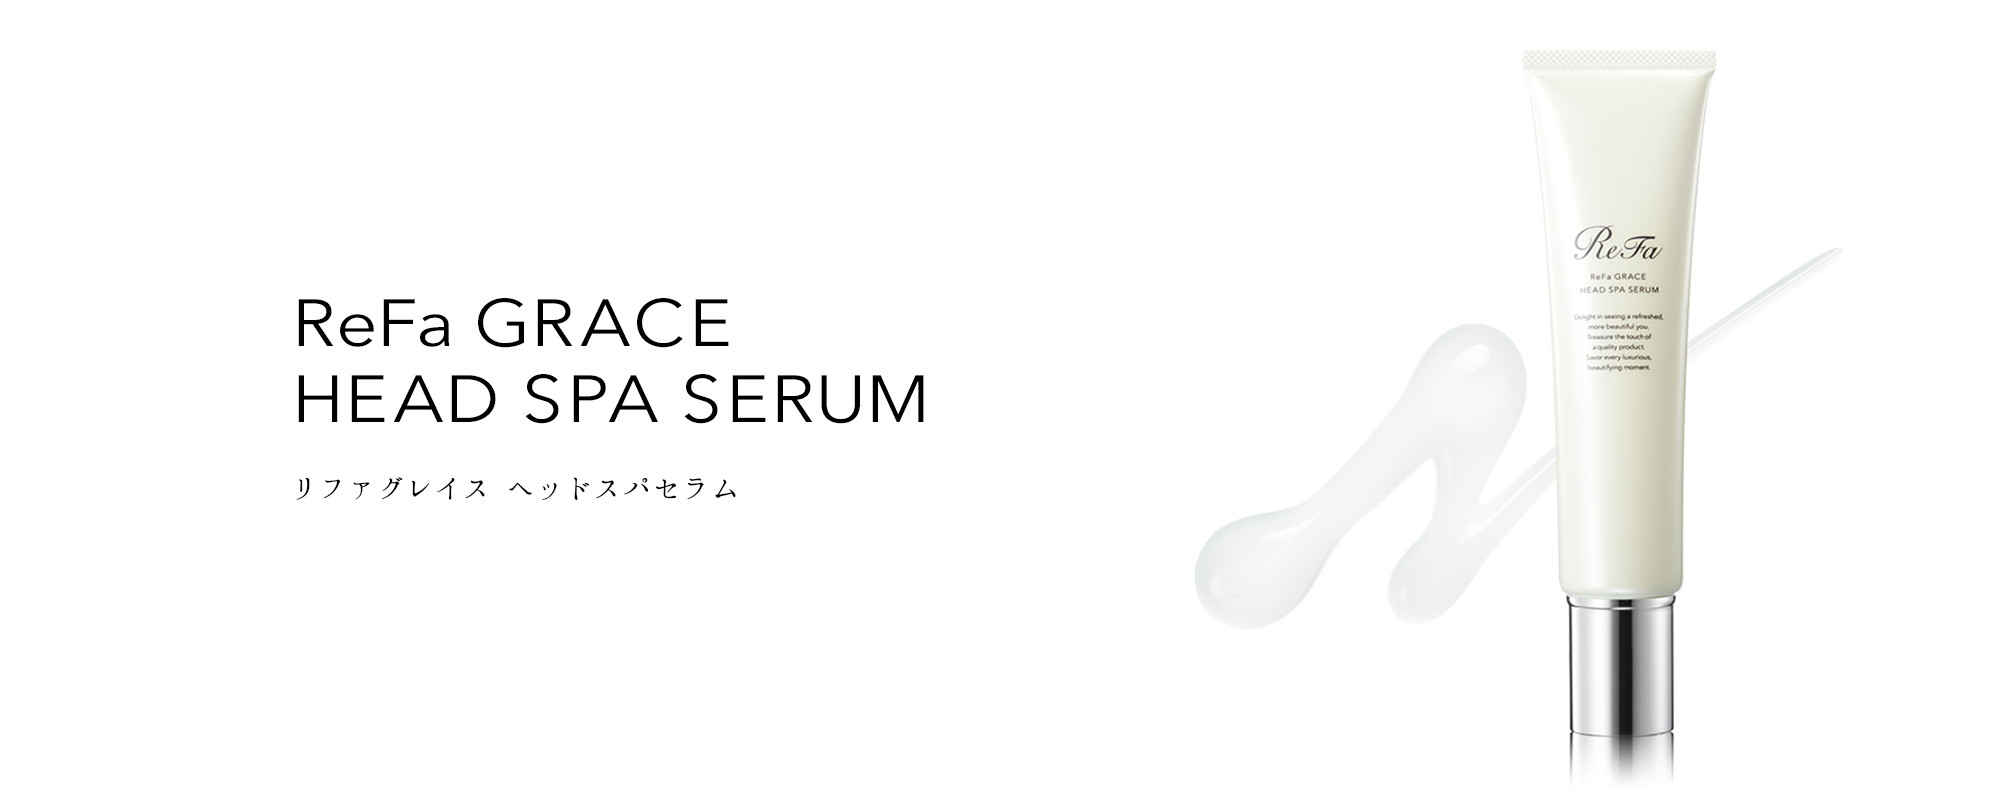 美容/健康 美容機器 リファグレイス ヘッドスパセラム - ReFa GRACE HEAD SPA SERUM | 商品 